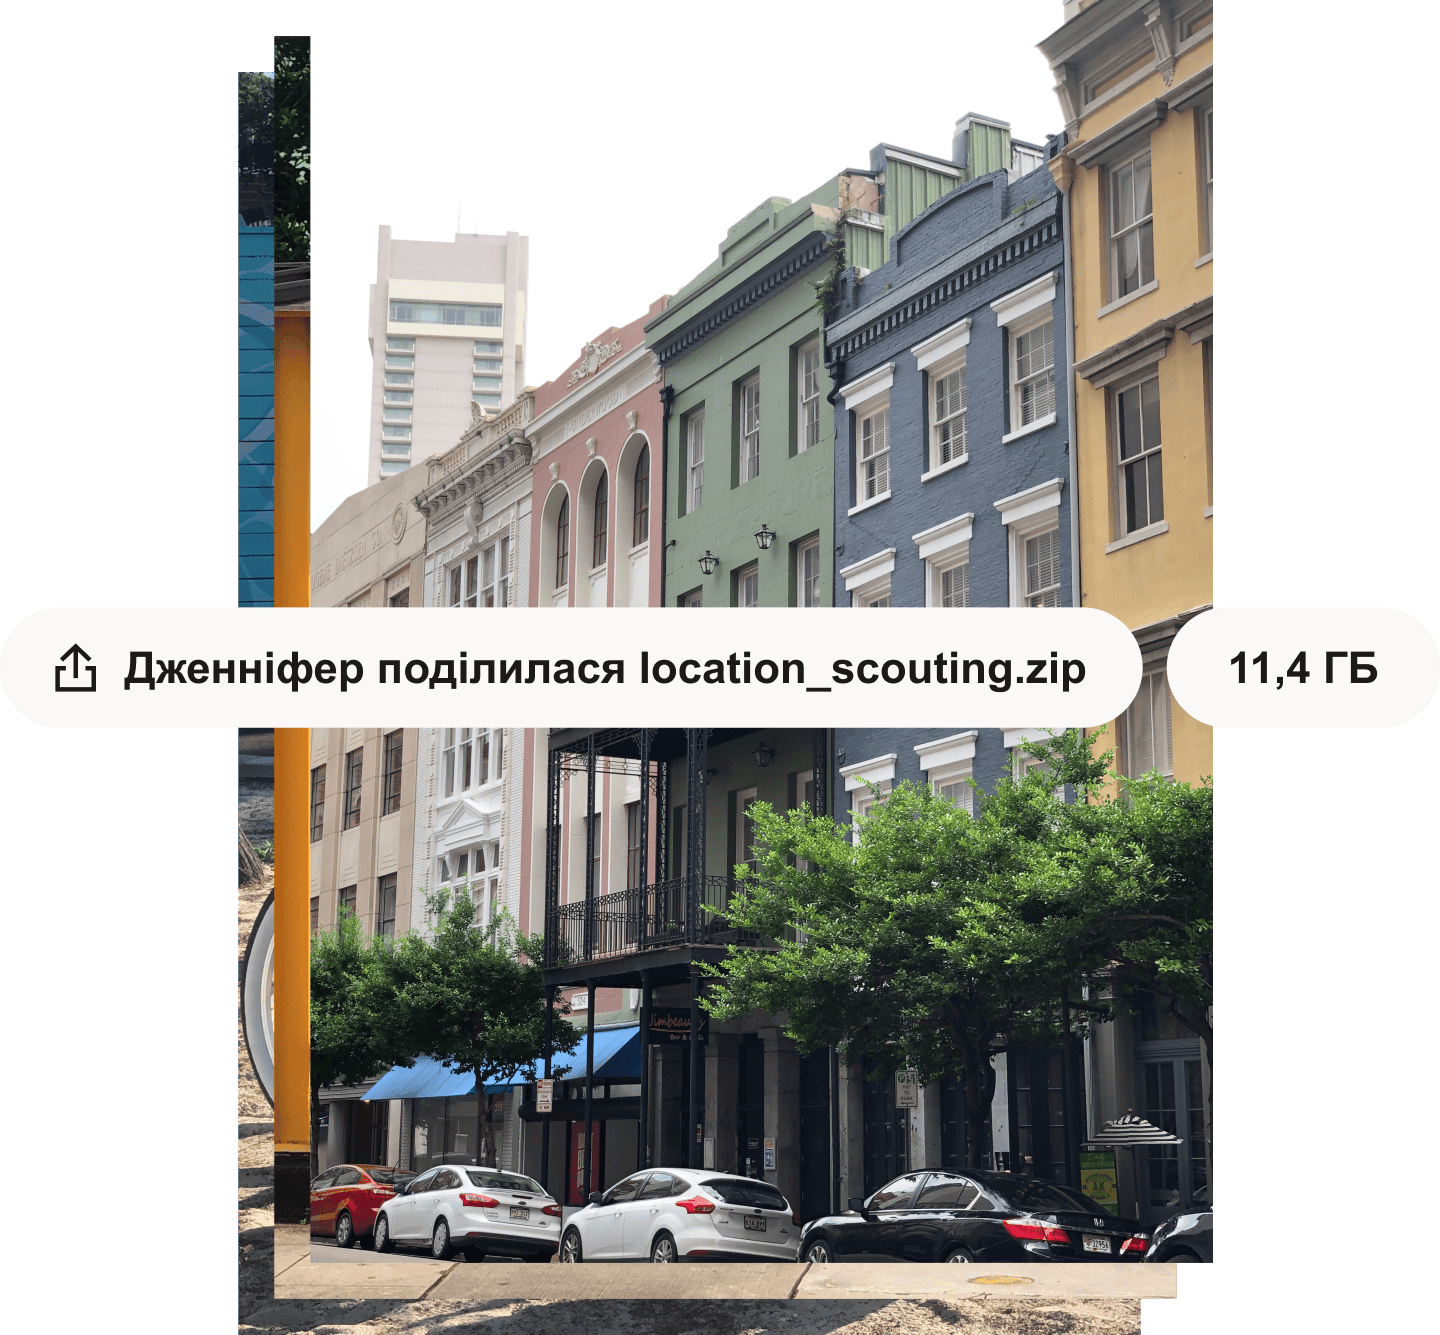 Фотографія міської вулиці з різнокольоровими будівлями. На фотографію накладені білі текстові бульбашки з назвою та розміром файлу.